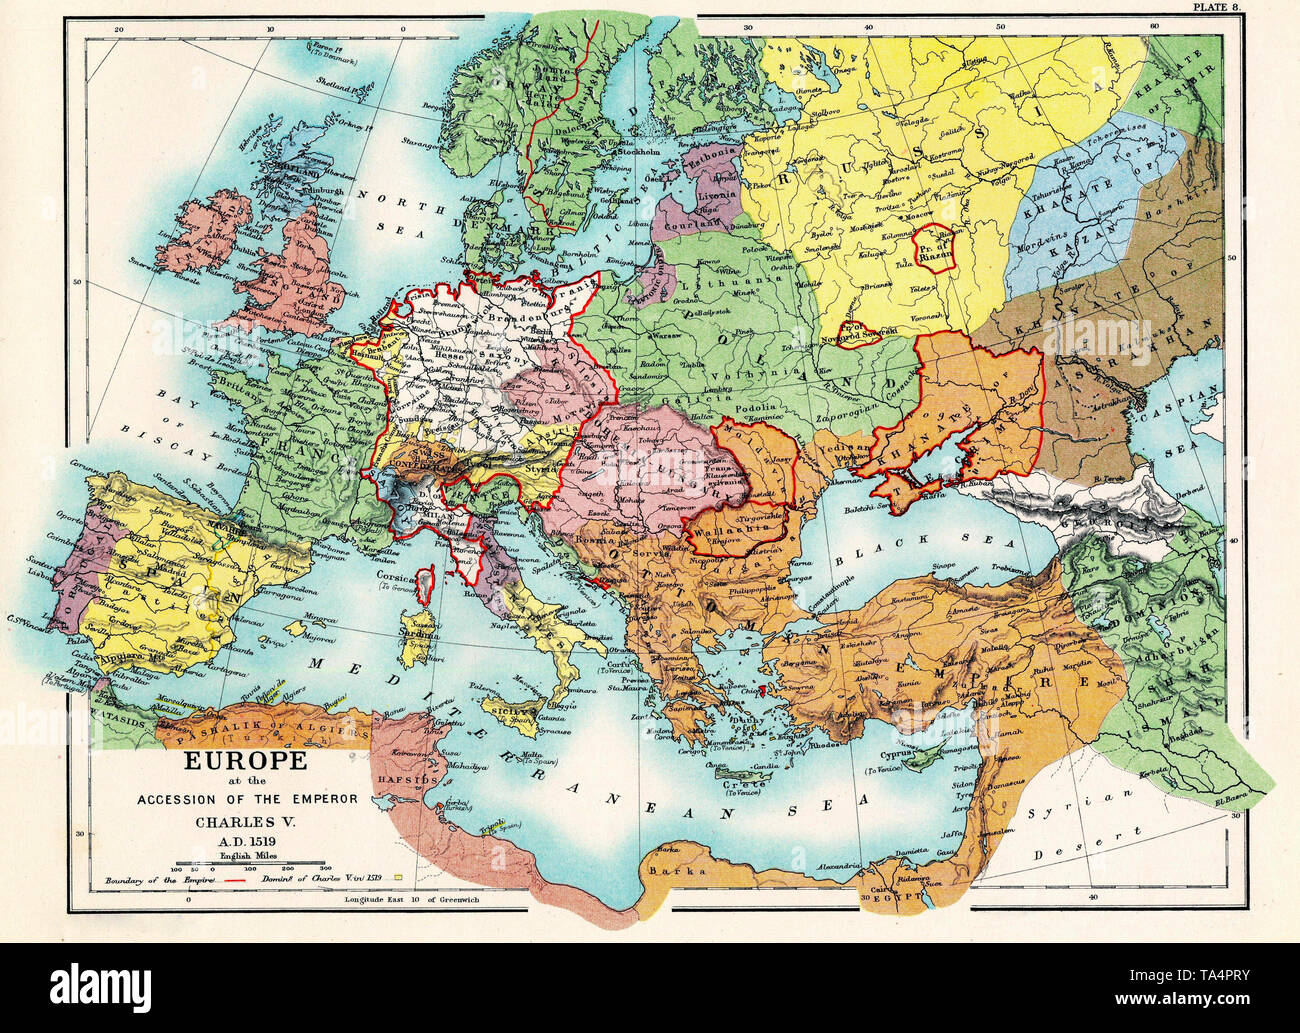 L'Europe à l'adhésion de l'Empereur Charles V (1519) Banque D'Images